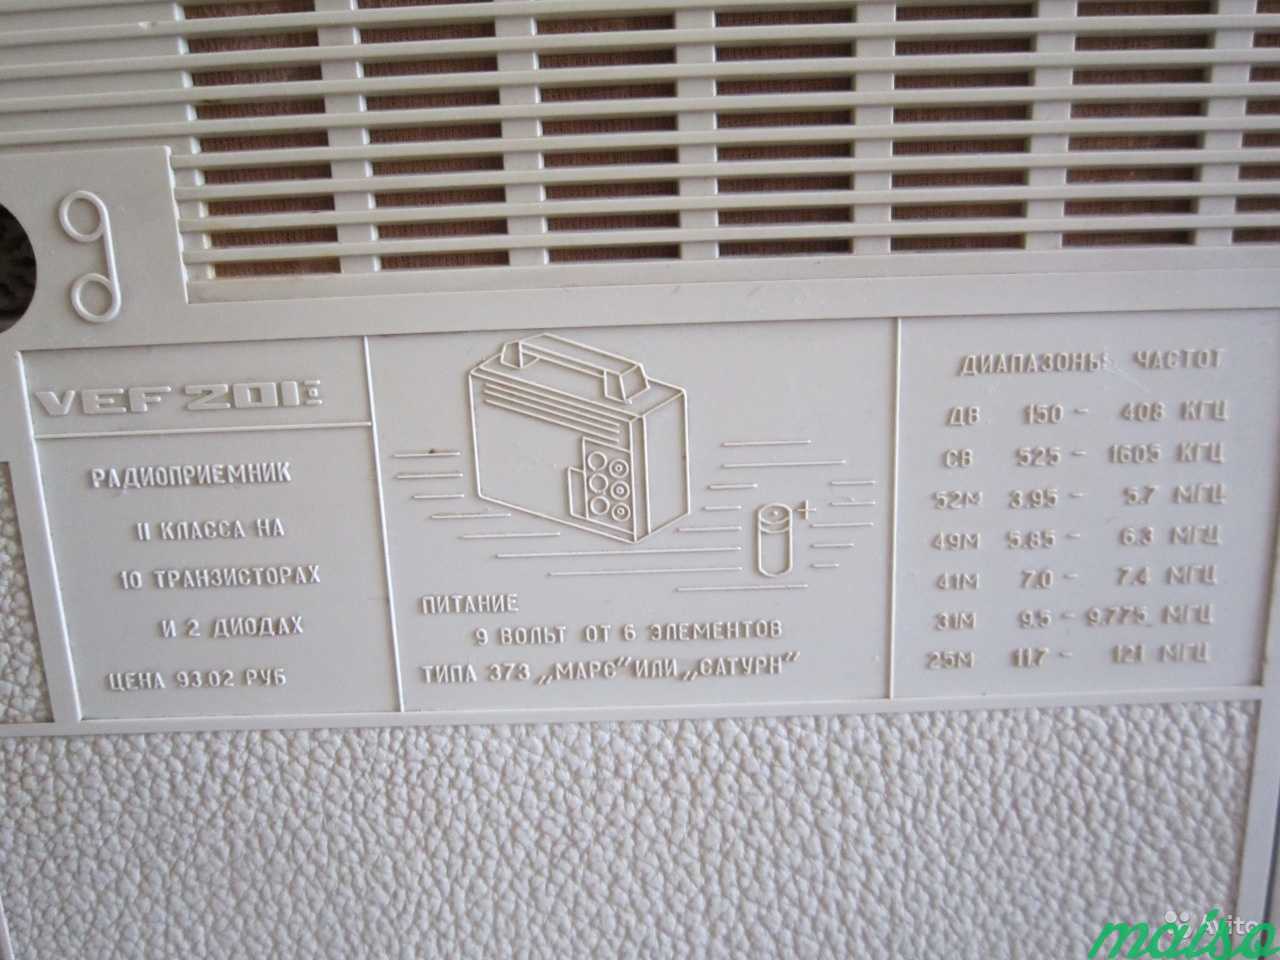 Радиоприемник VEF 201 VEF 216 Vilnis в Санкт-Петербурге. Фото 4